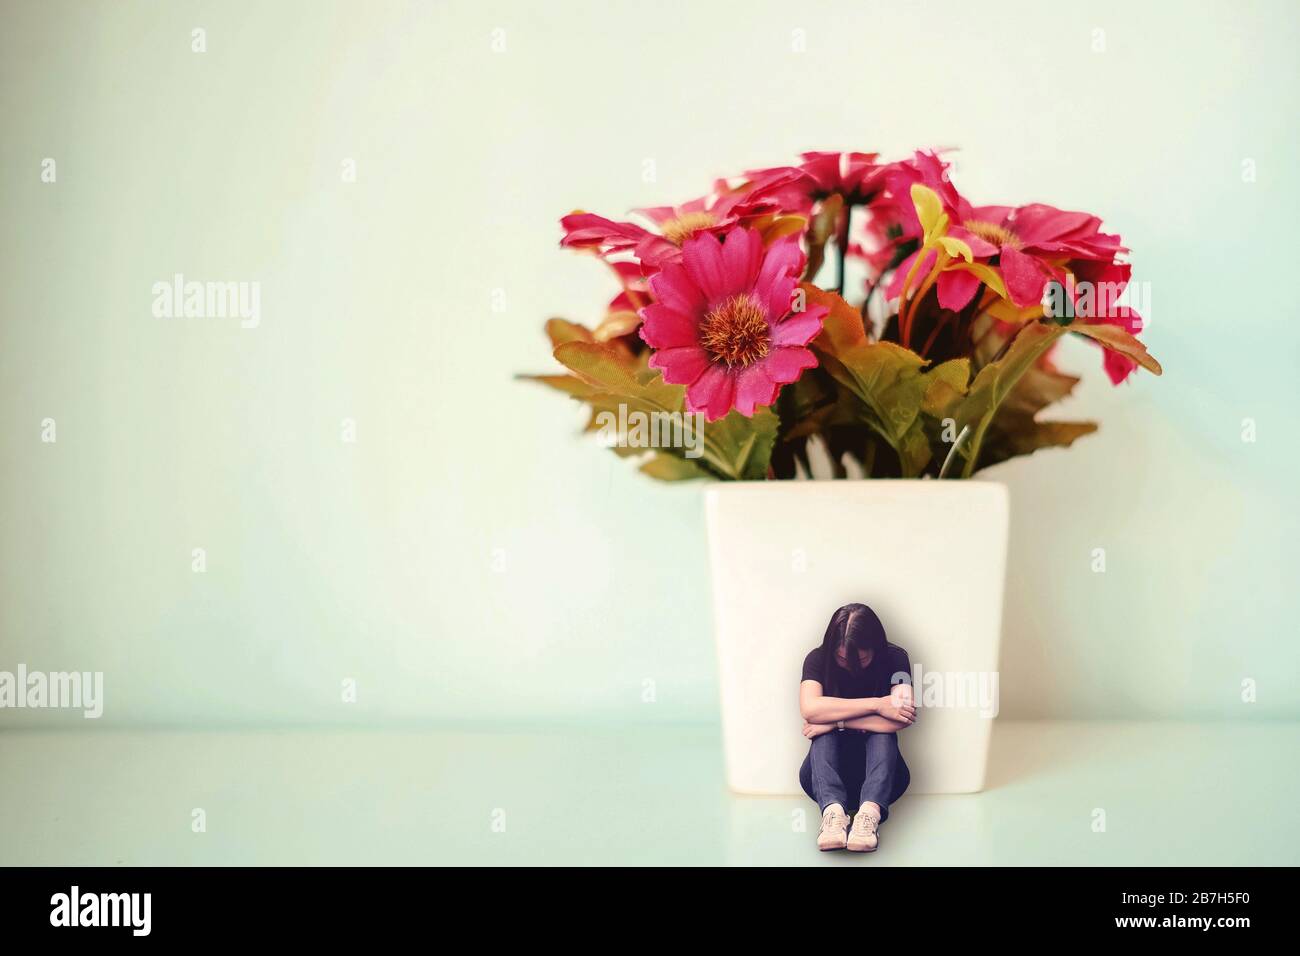 Triste mujer deprimida sentada con la espalda se inclina contra la olla blanca con flor roja falsa. Concepto mínimo de tristeza, soledad. Foto de stock